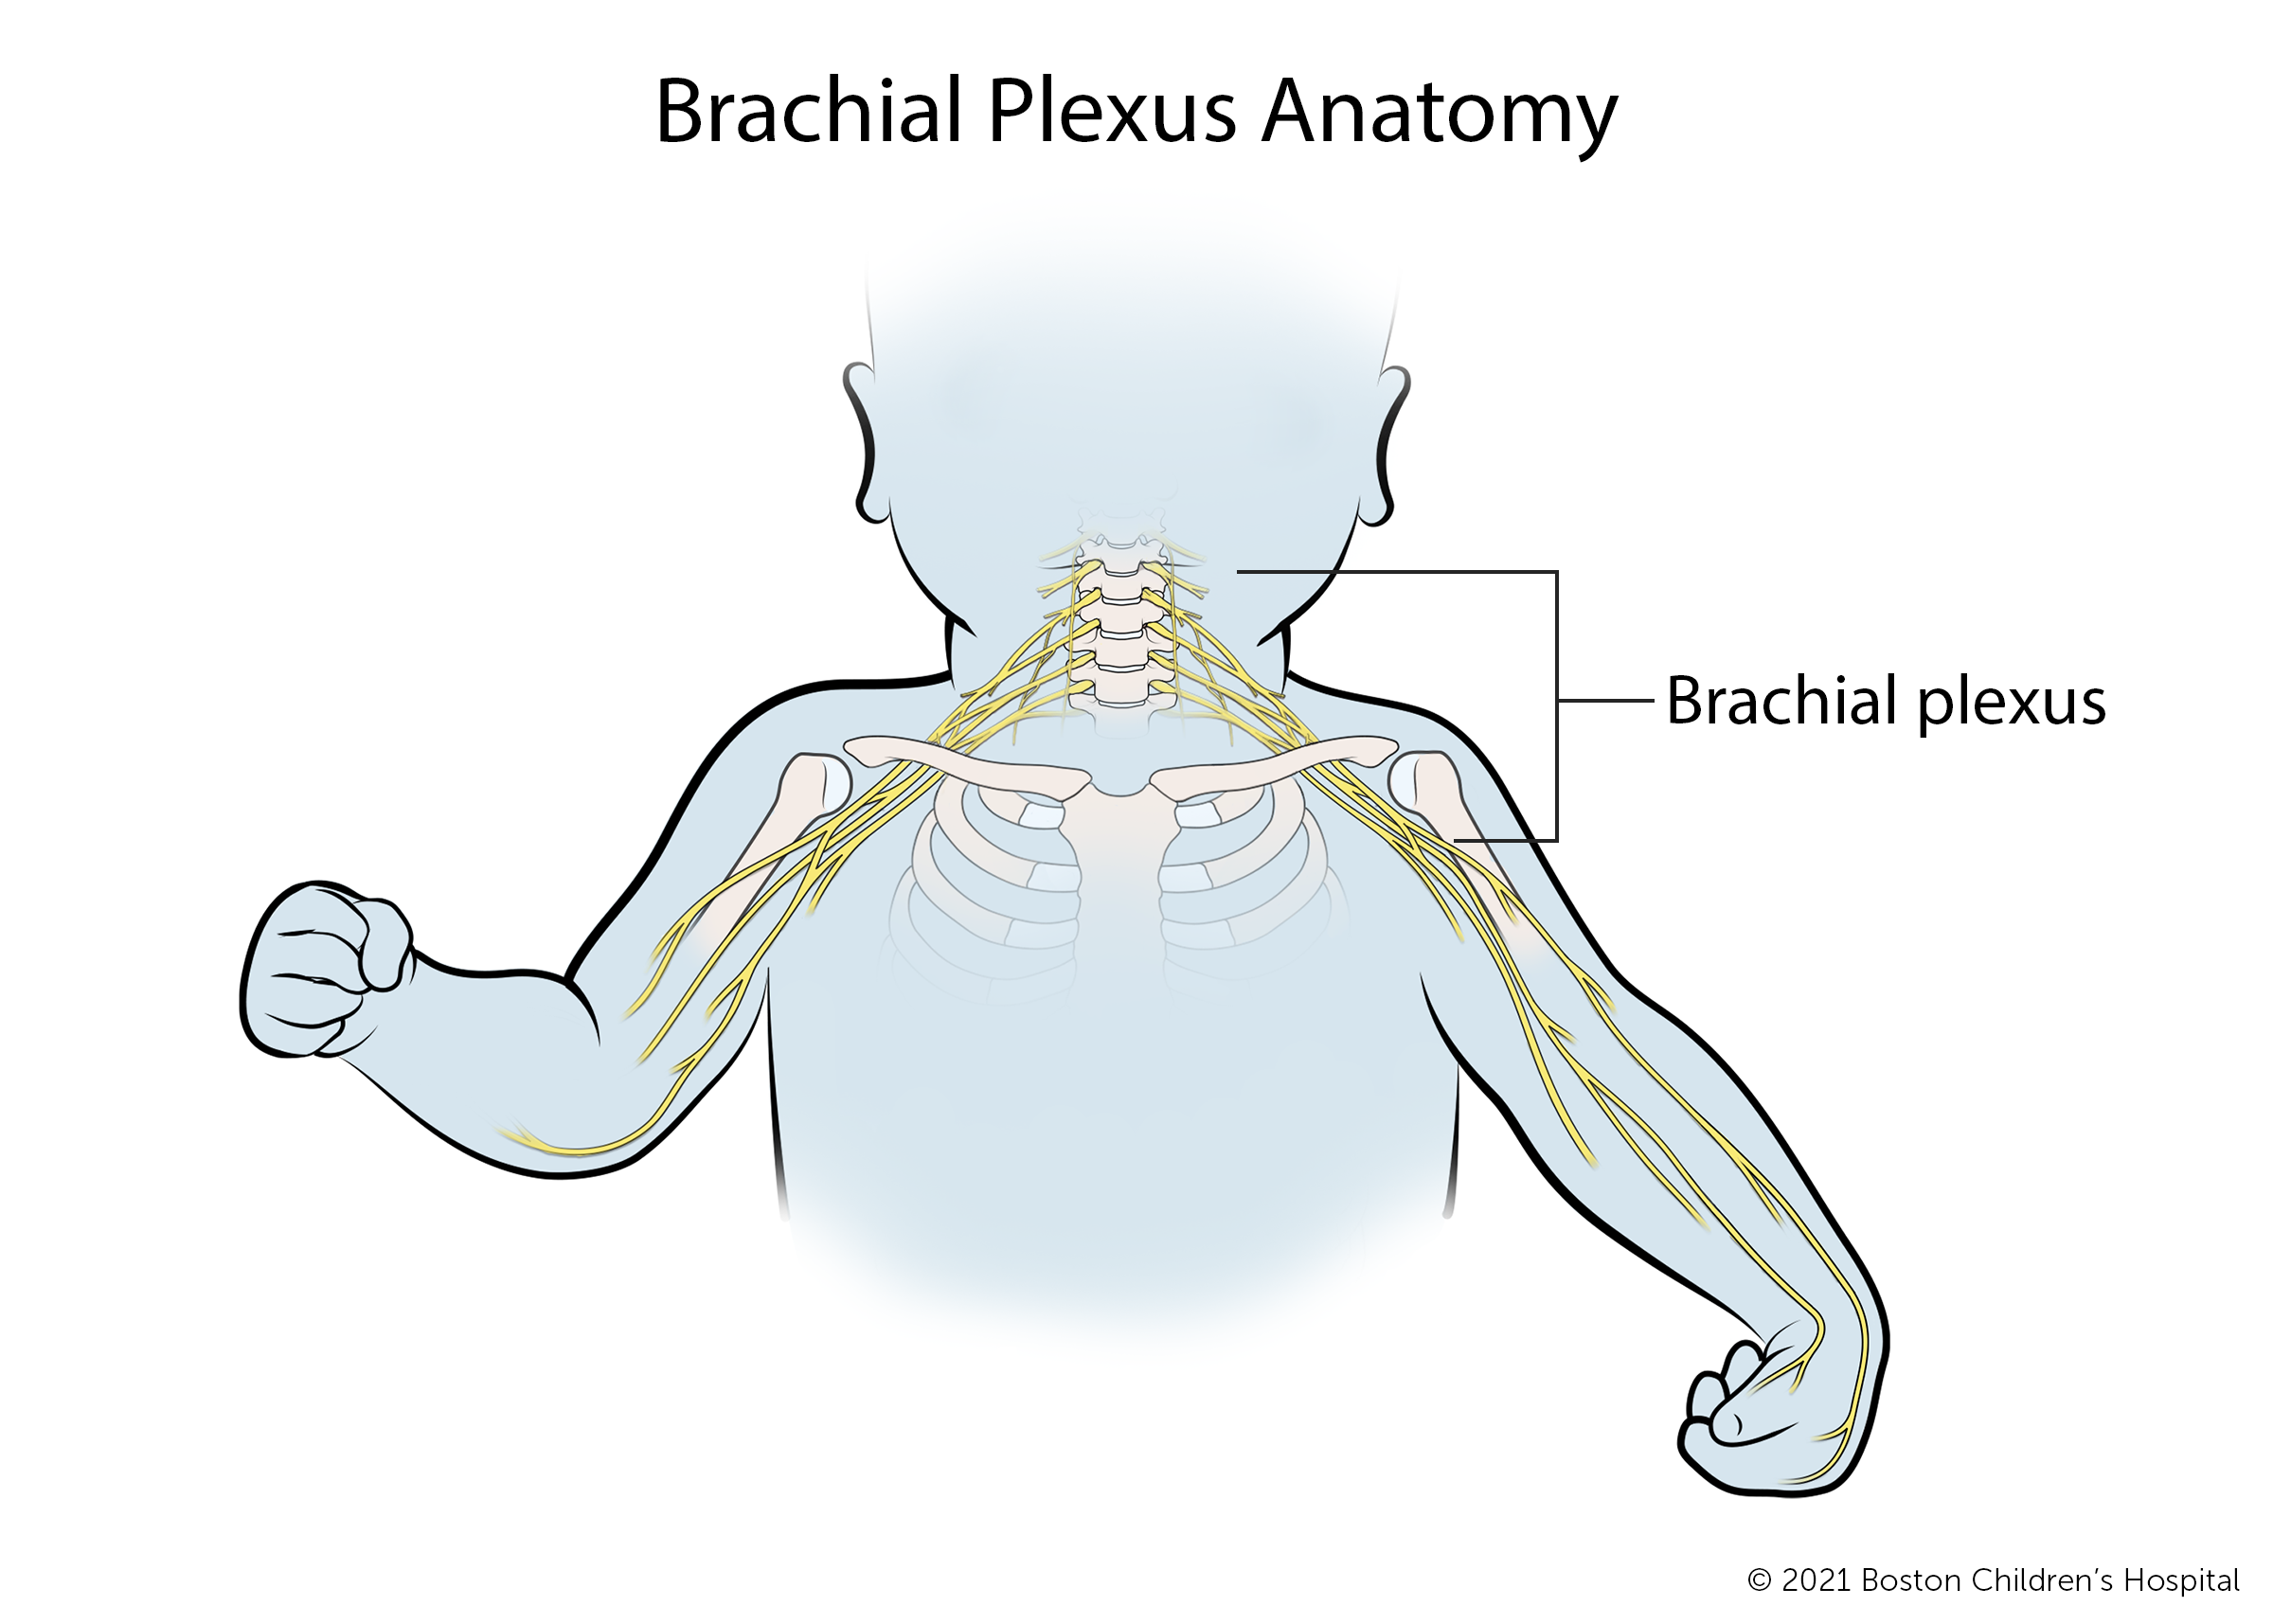 臂丛解剖学:臂丛是一个神经网络，连接脊髓到肩膀，手臂和手。